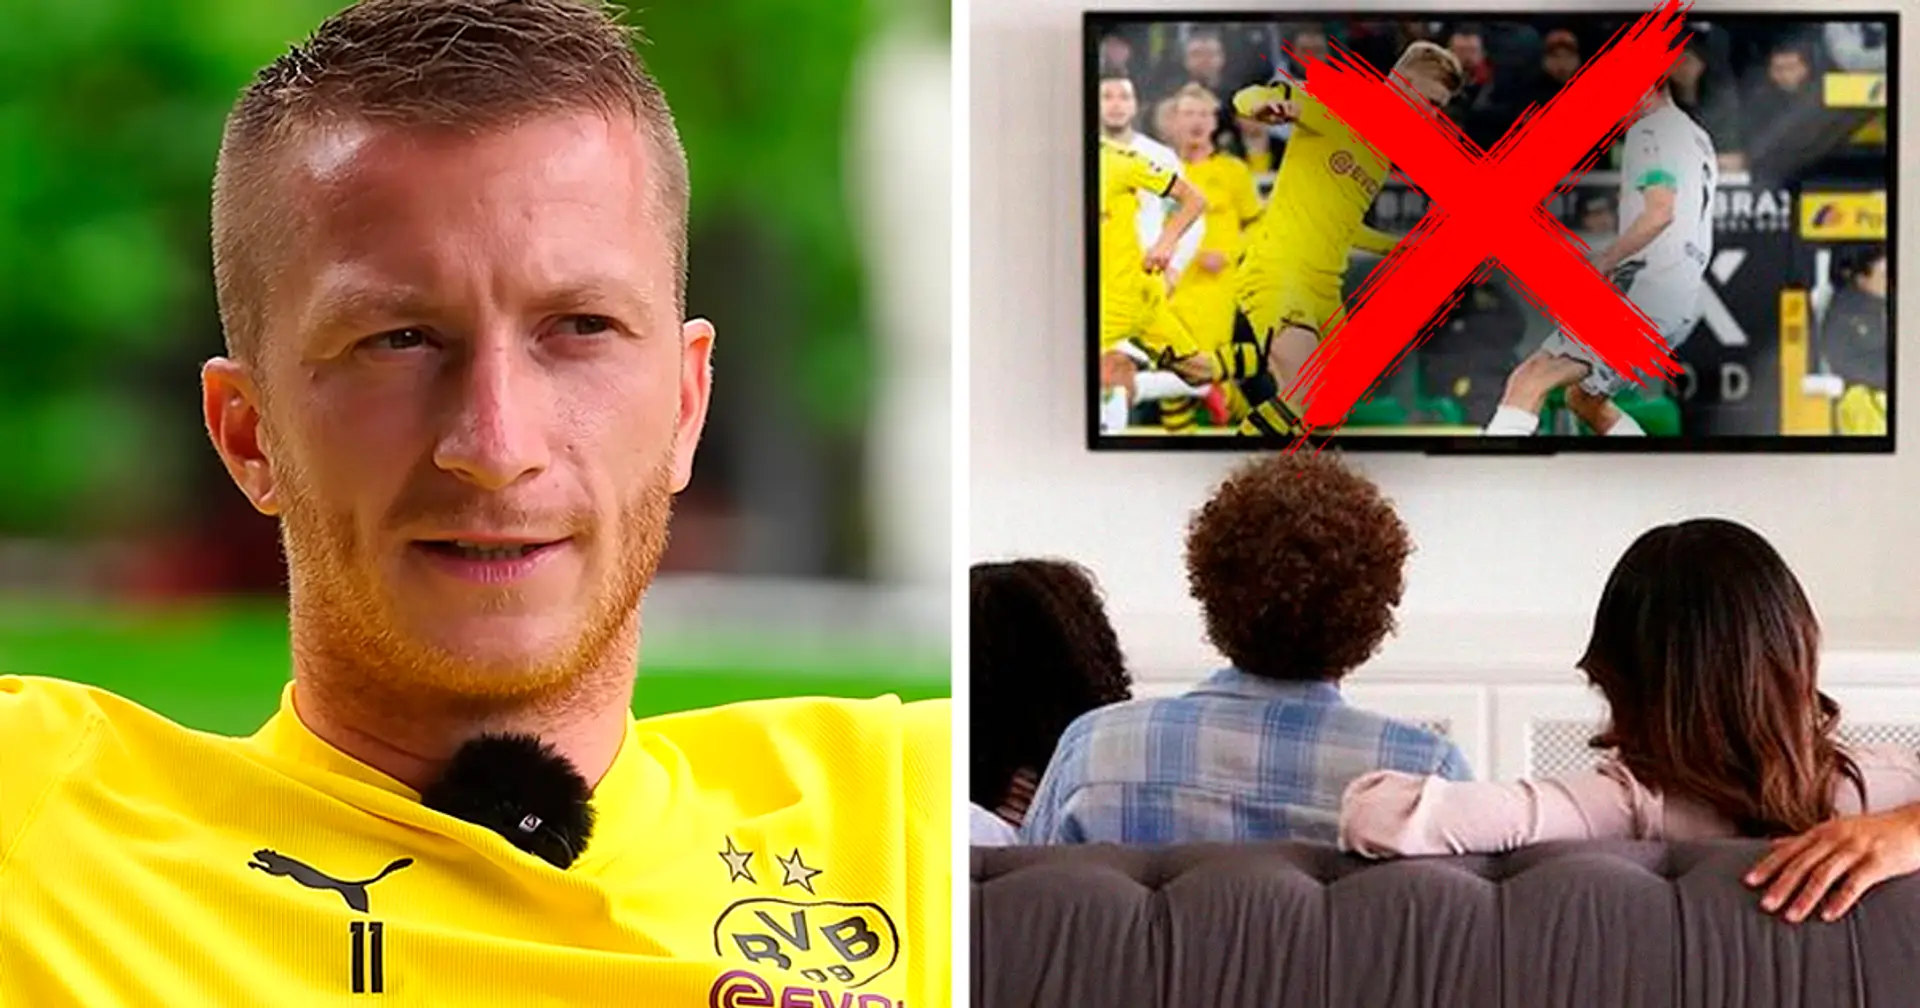 Nicht die Bundesliga: Marco Reus verrät, welche Top-Ligen er lieber im TV sehen würde